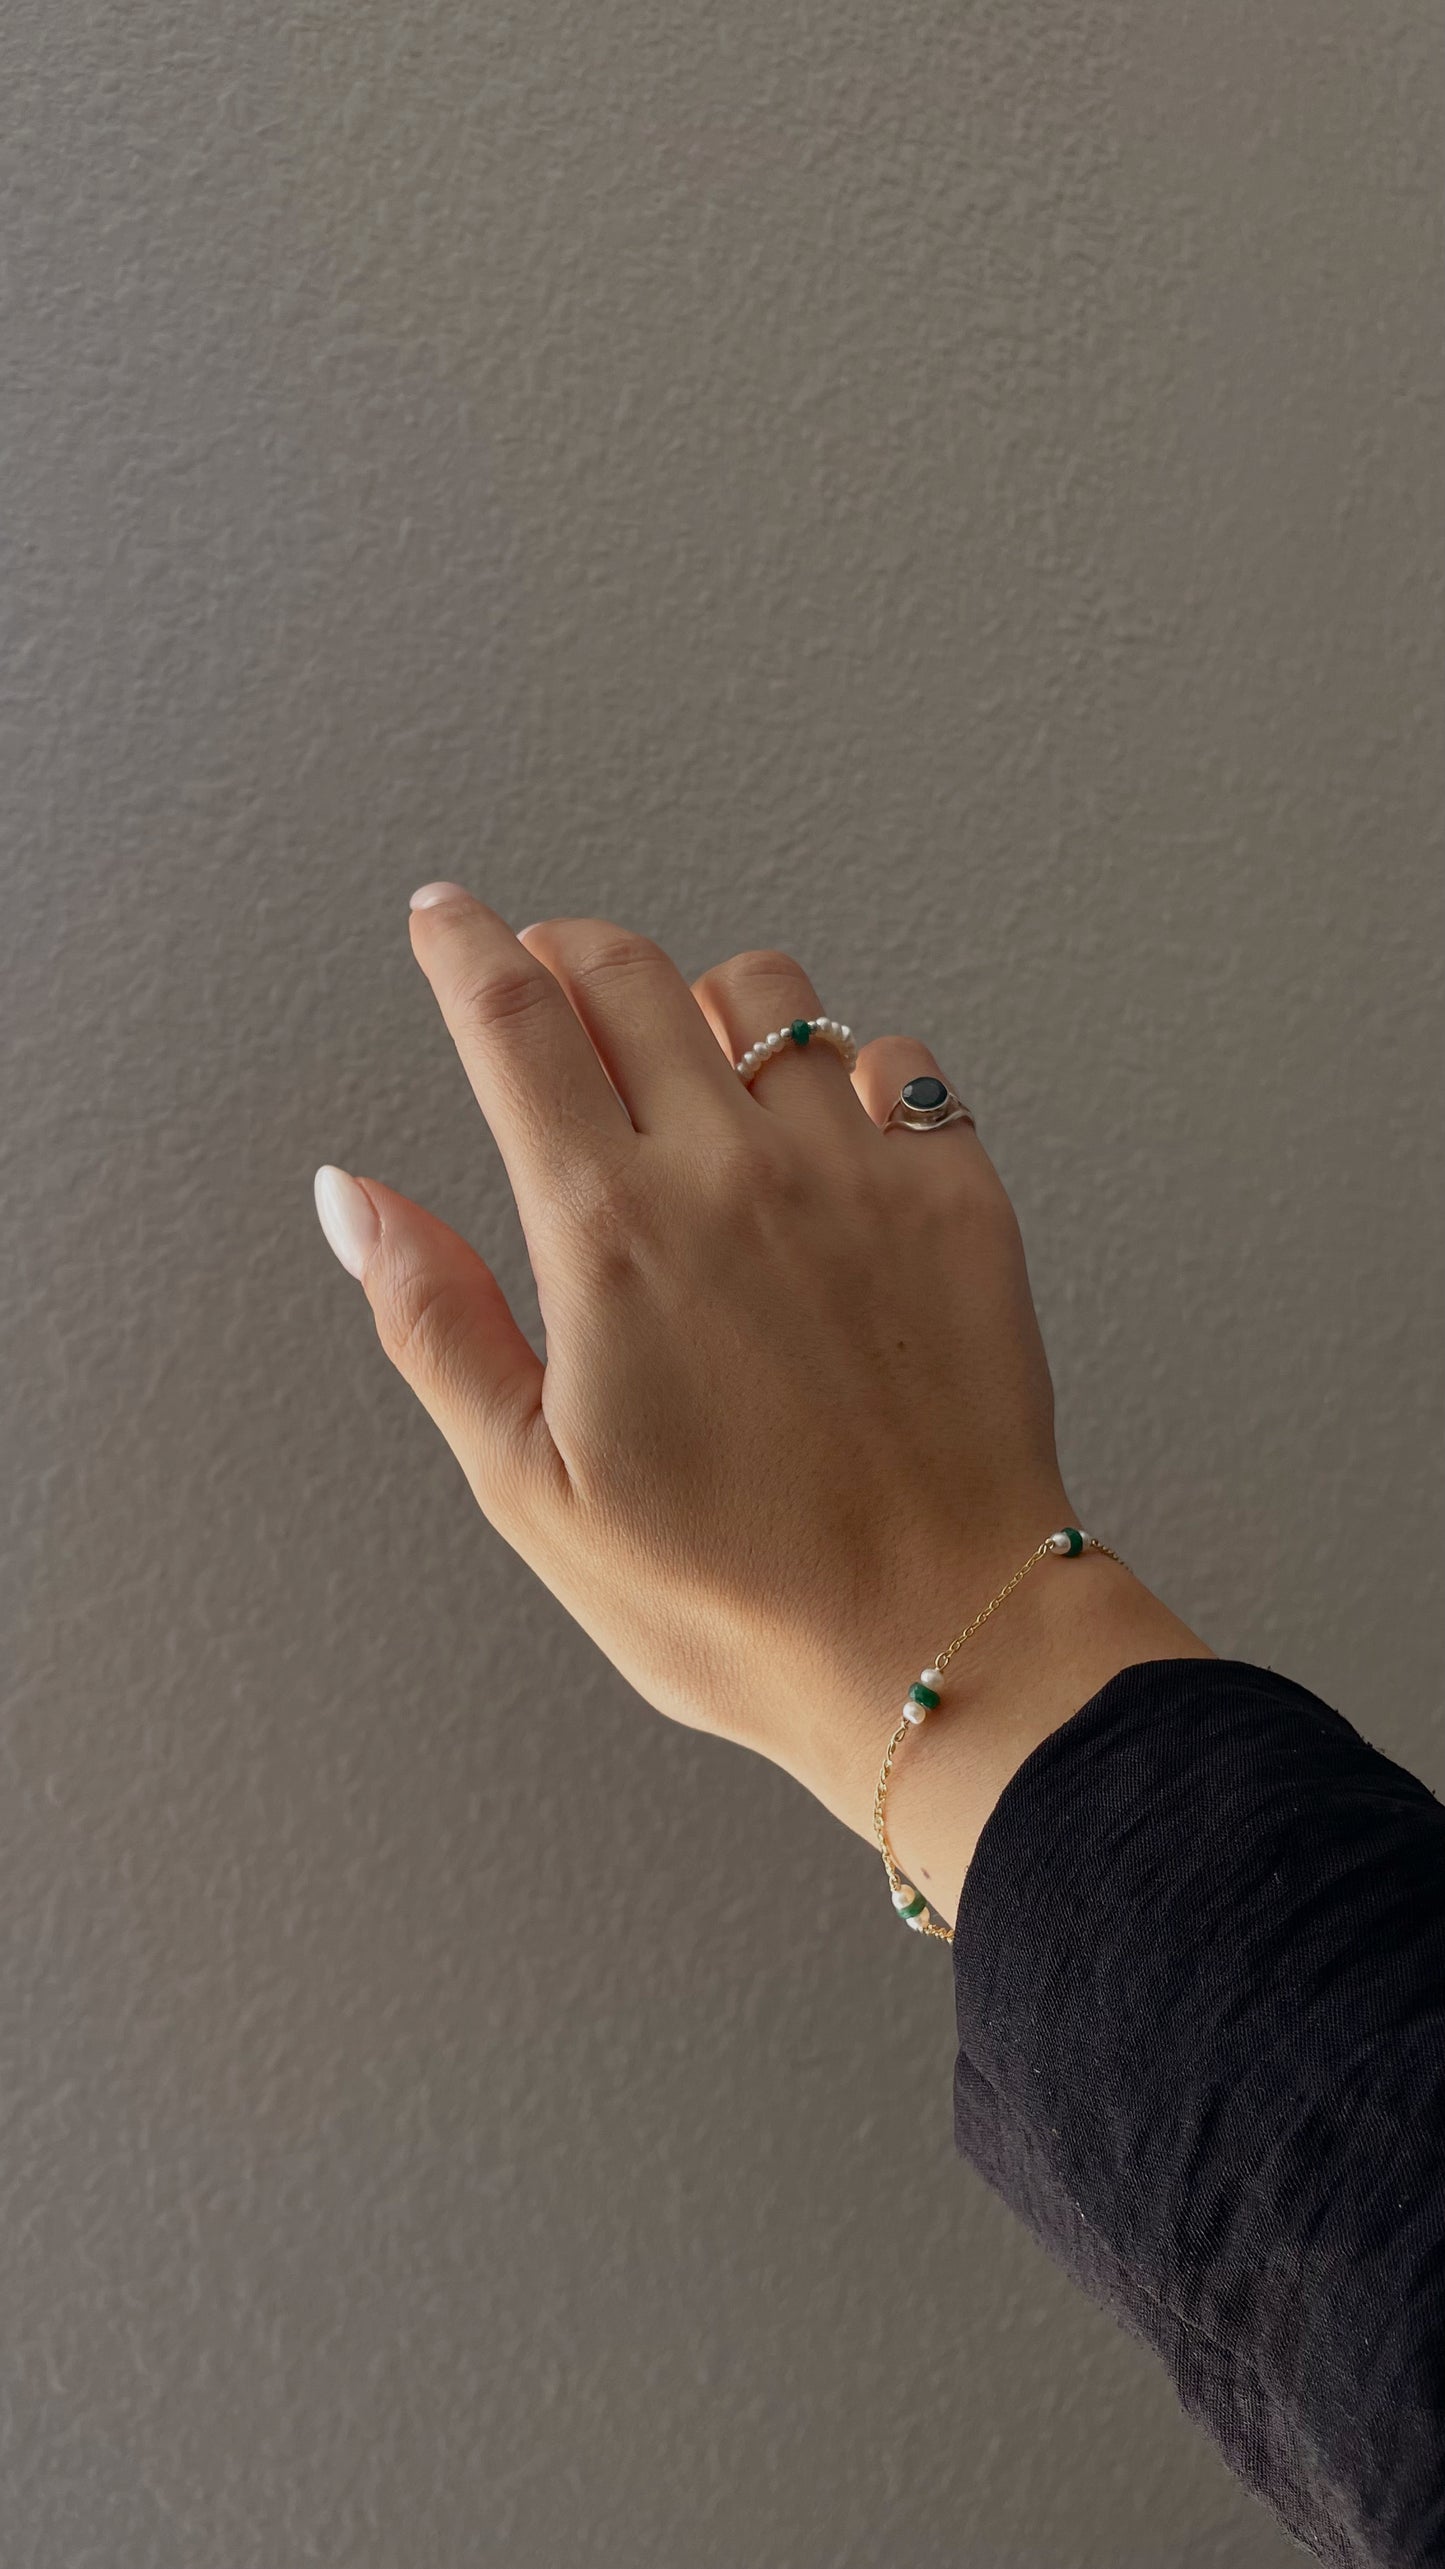 Emerald & pearl bracelet